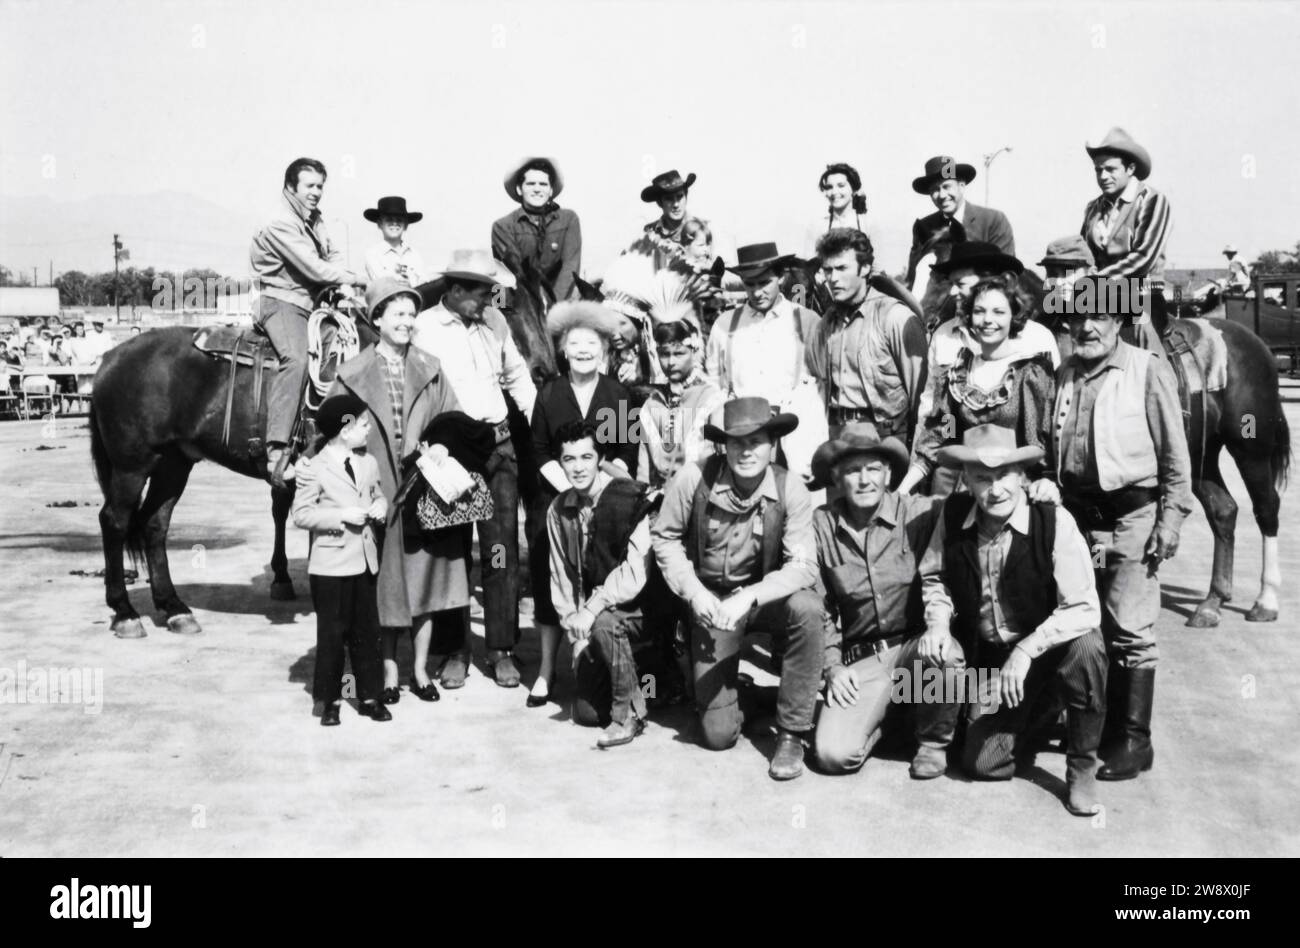 CLINT EASTWOOD in Gruppenfoto um 1963 offen zu der Zeit, als er in der Fernsehserie RAWHIDE bei einer Cowboy/Western-Show für behinderte Kinder mit CLU GULAGER auf Pferd ganz links auftrat Stockfoto